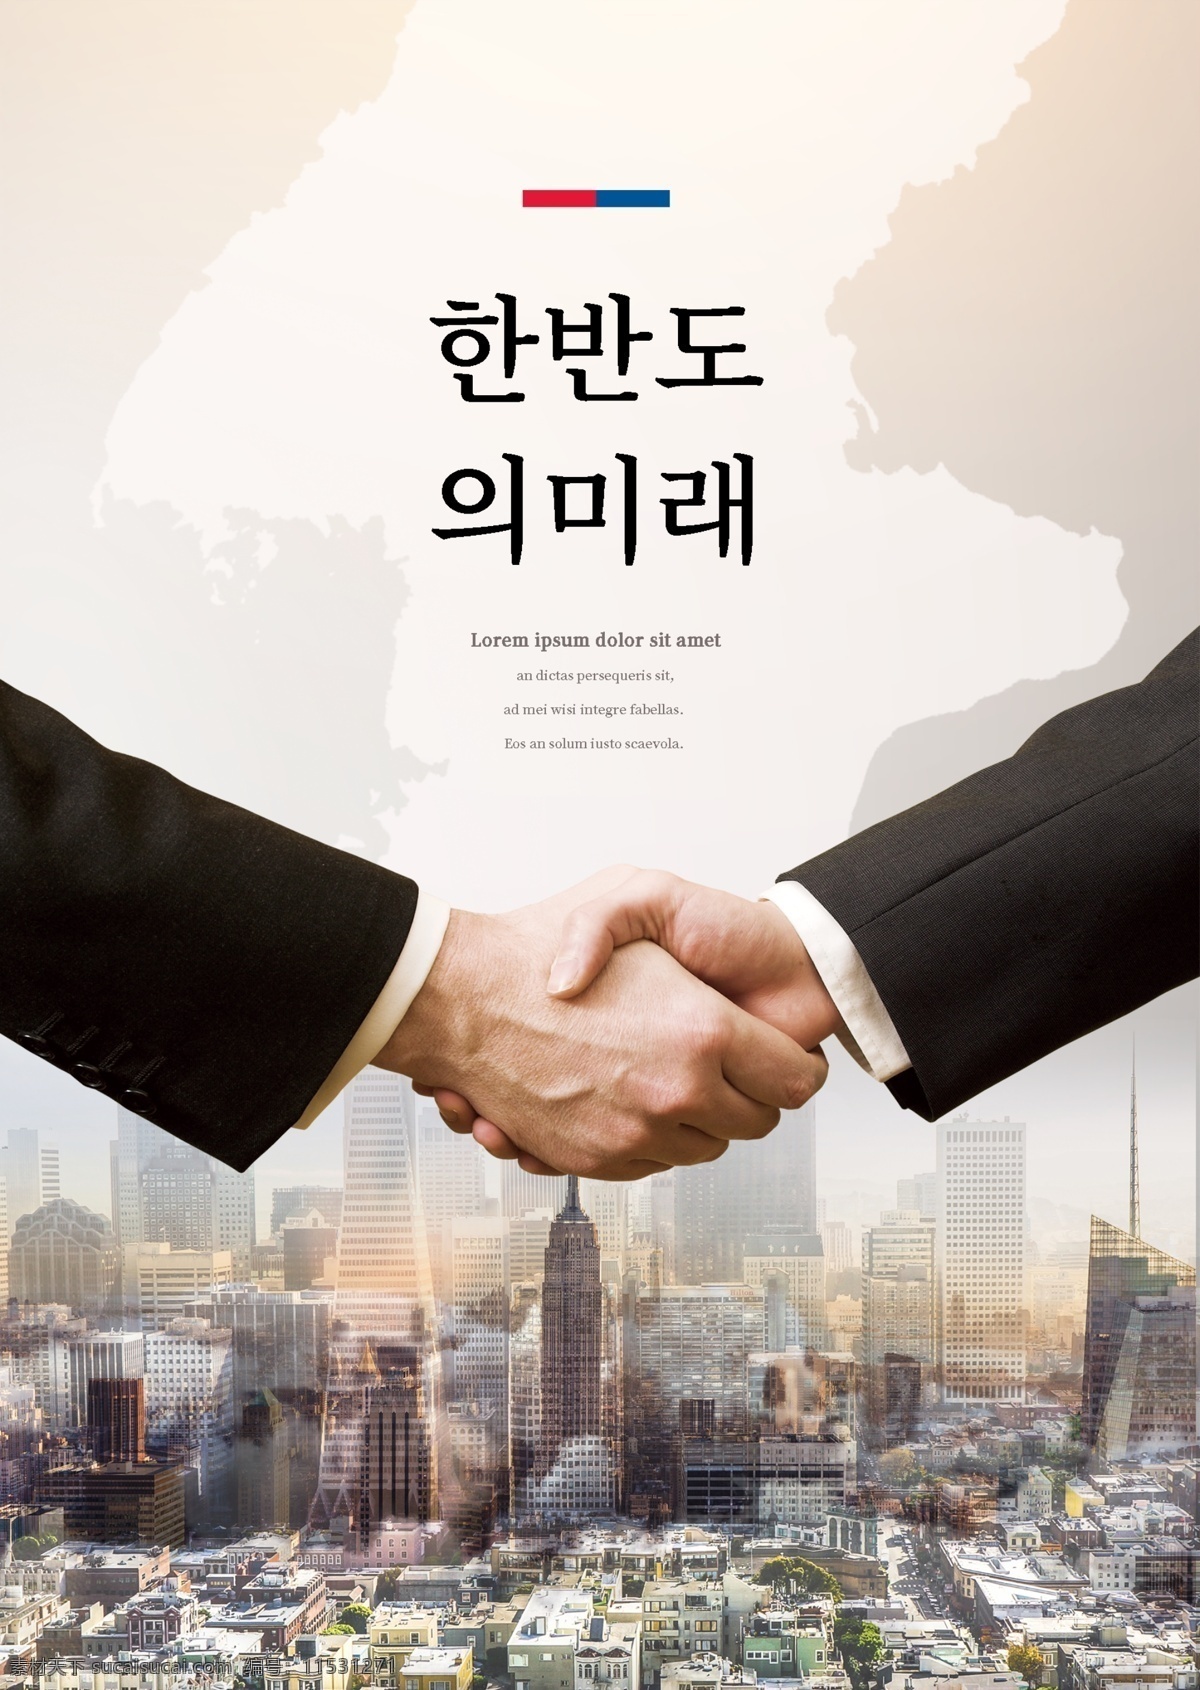 韩国 城市规划 建设 发展 海报 床 技术 肝脏药物 建造 高层建筑 广告的未来 黄色 市 方法 握手 韩国地图 开发 种 建造鸟瞰图 商业广告